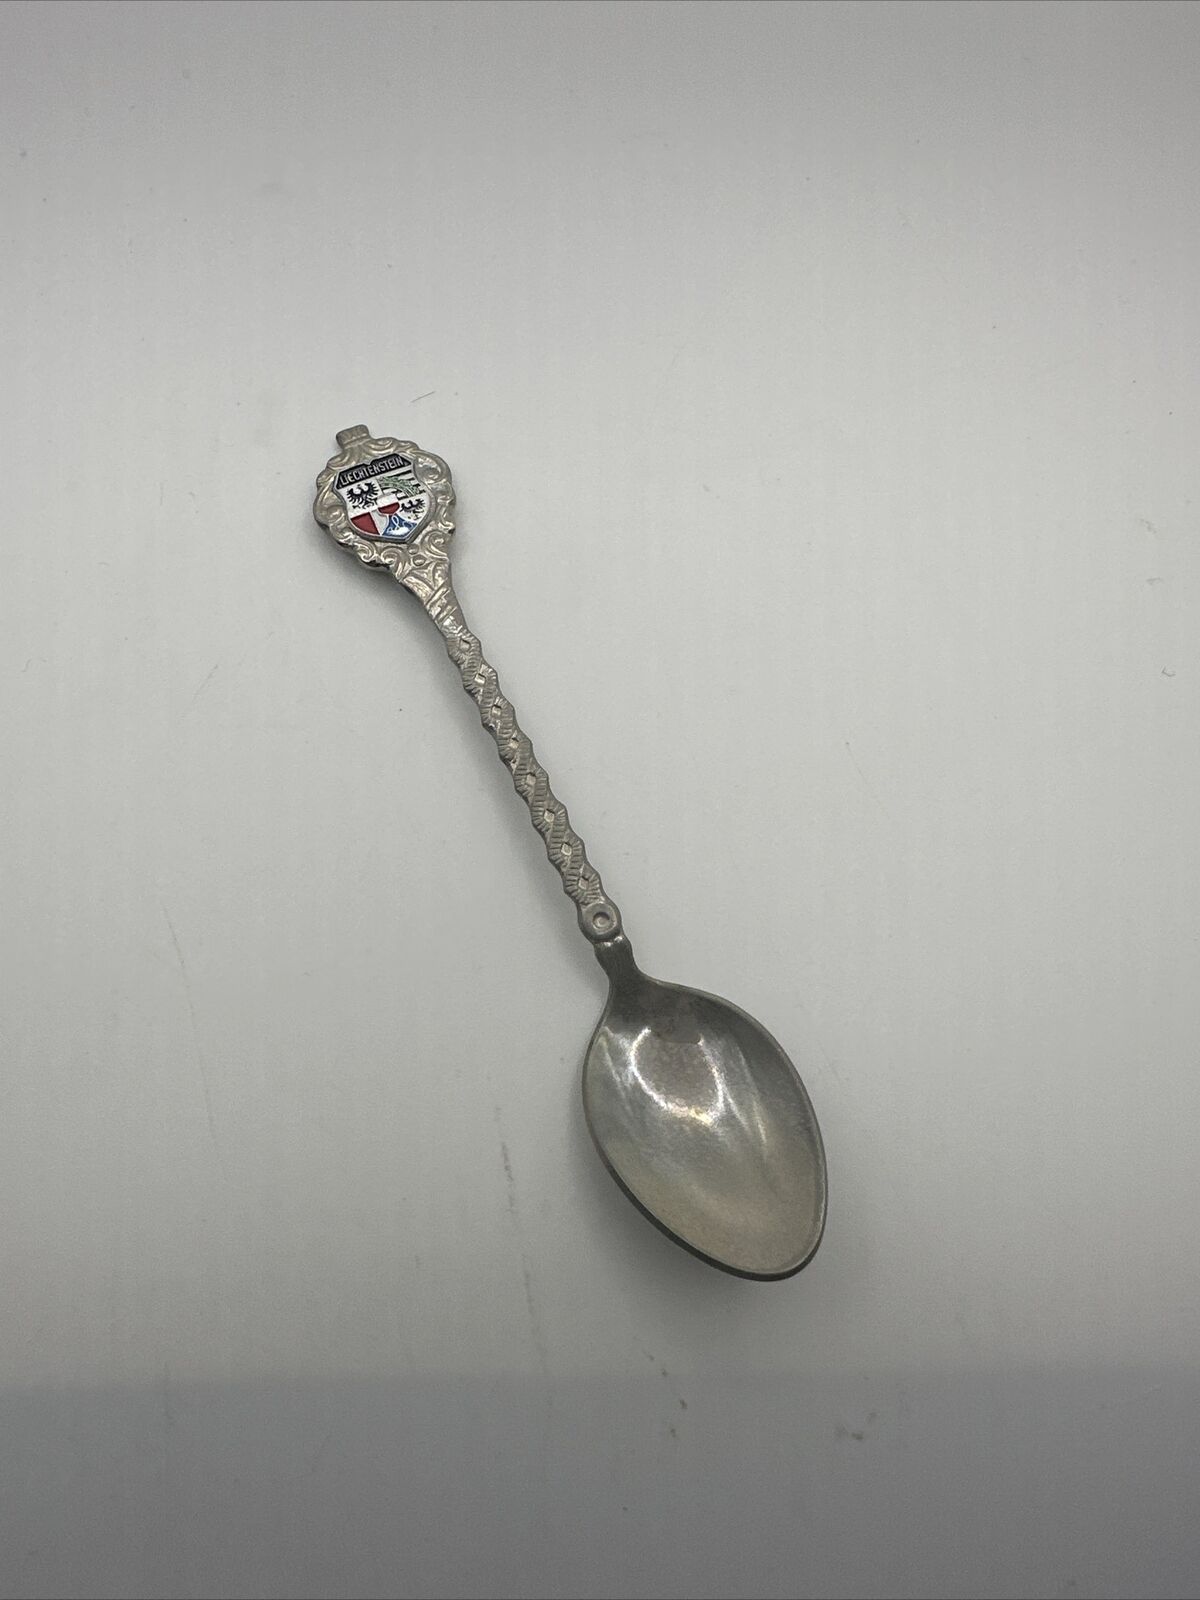 Vintage Liechtenstein Collectible Souvenir Spoon